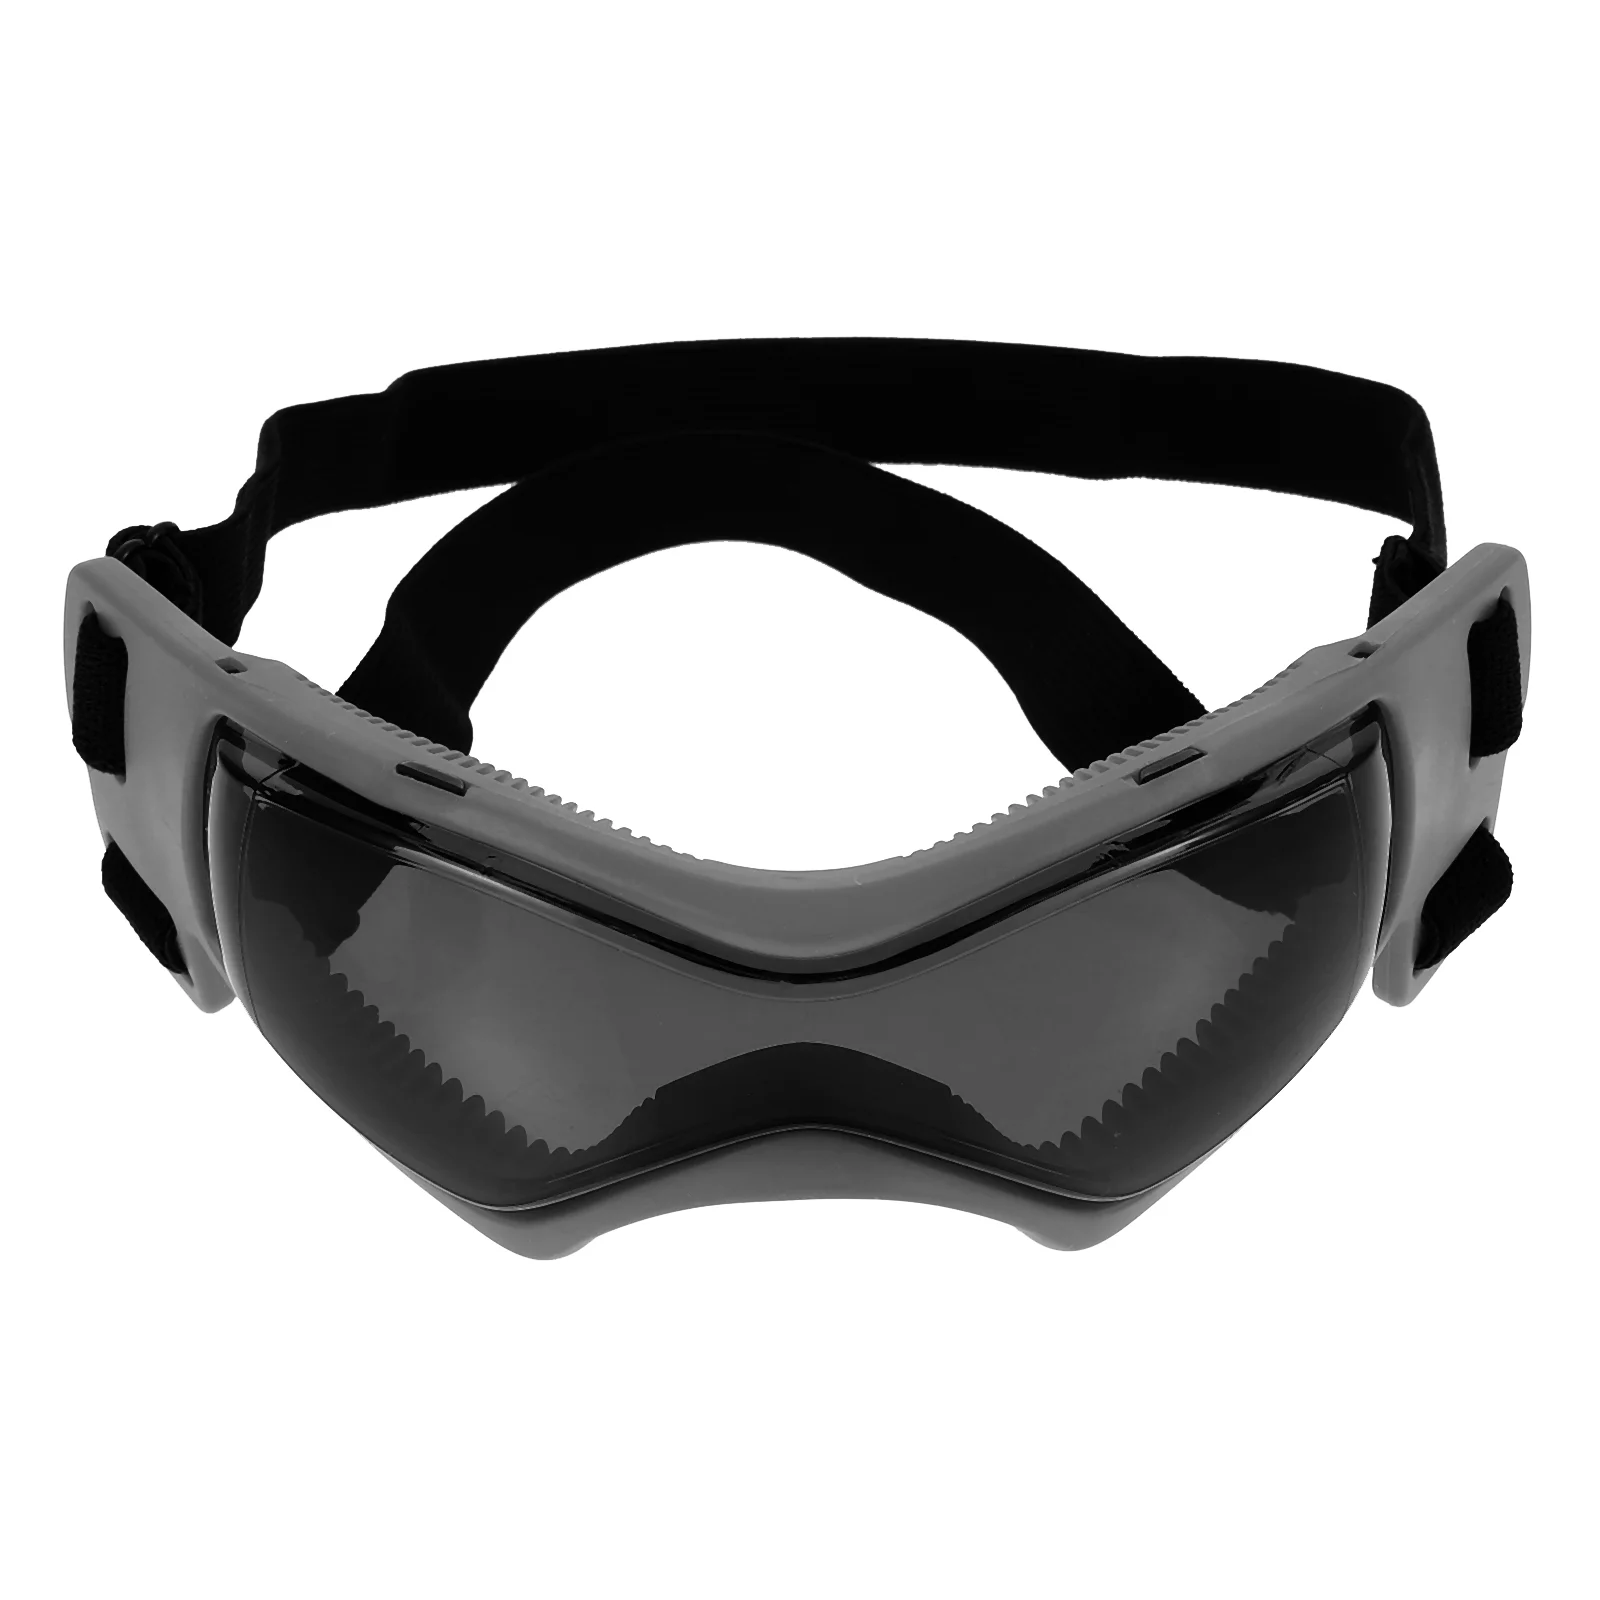 הכלב משקפי מגן נגד UV משקפי מחמד אופנתיים משקפי שמש ערפל עמיד למים עין-ללבוש מסגרת תמונה מושכת Eyewear נייד התמונה 3